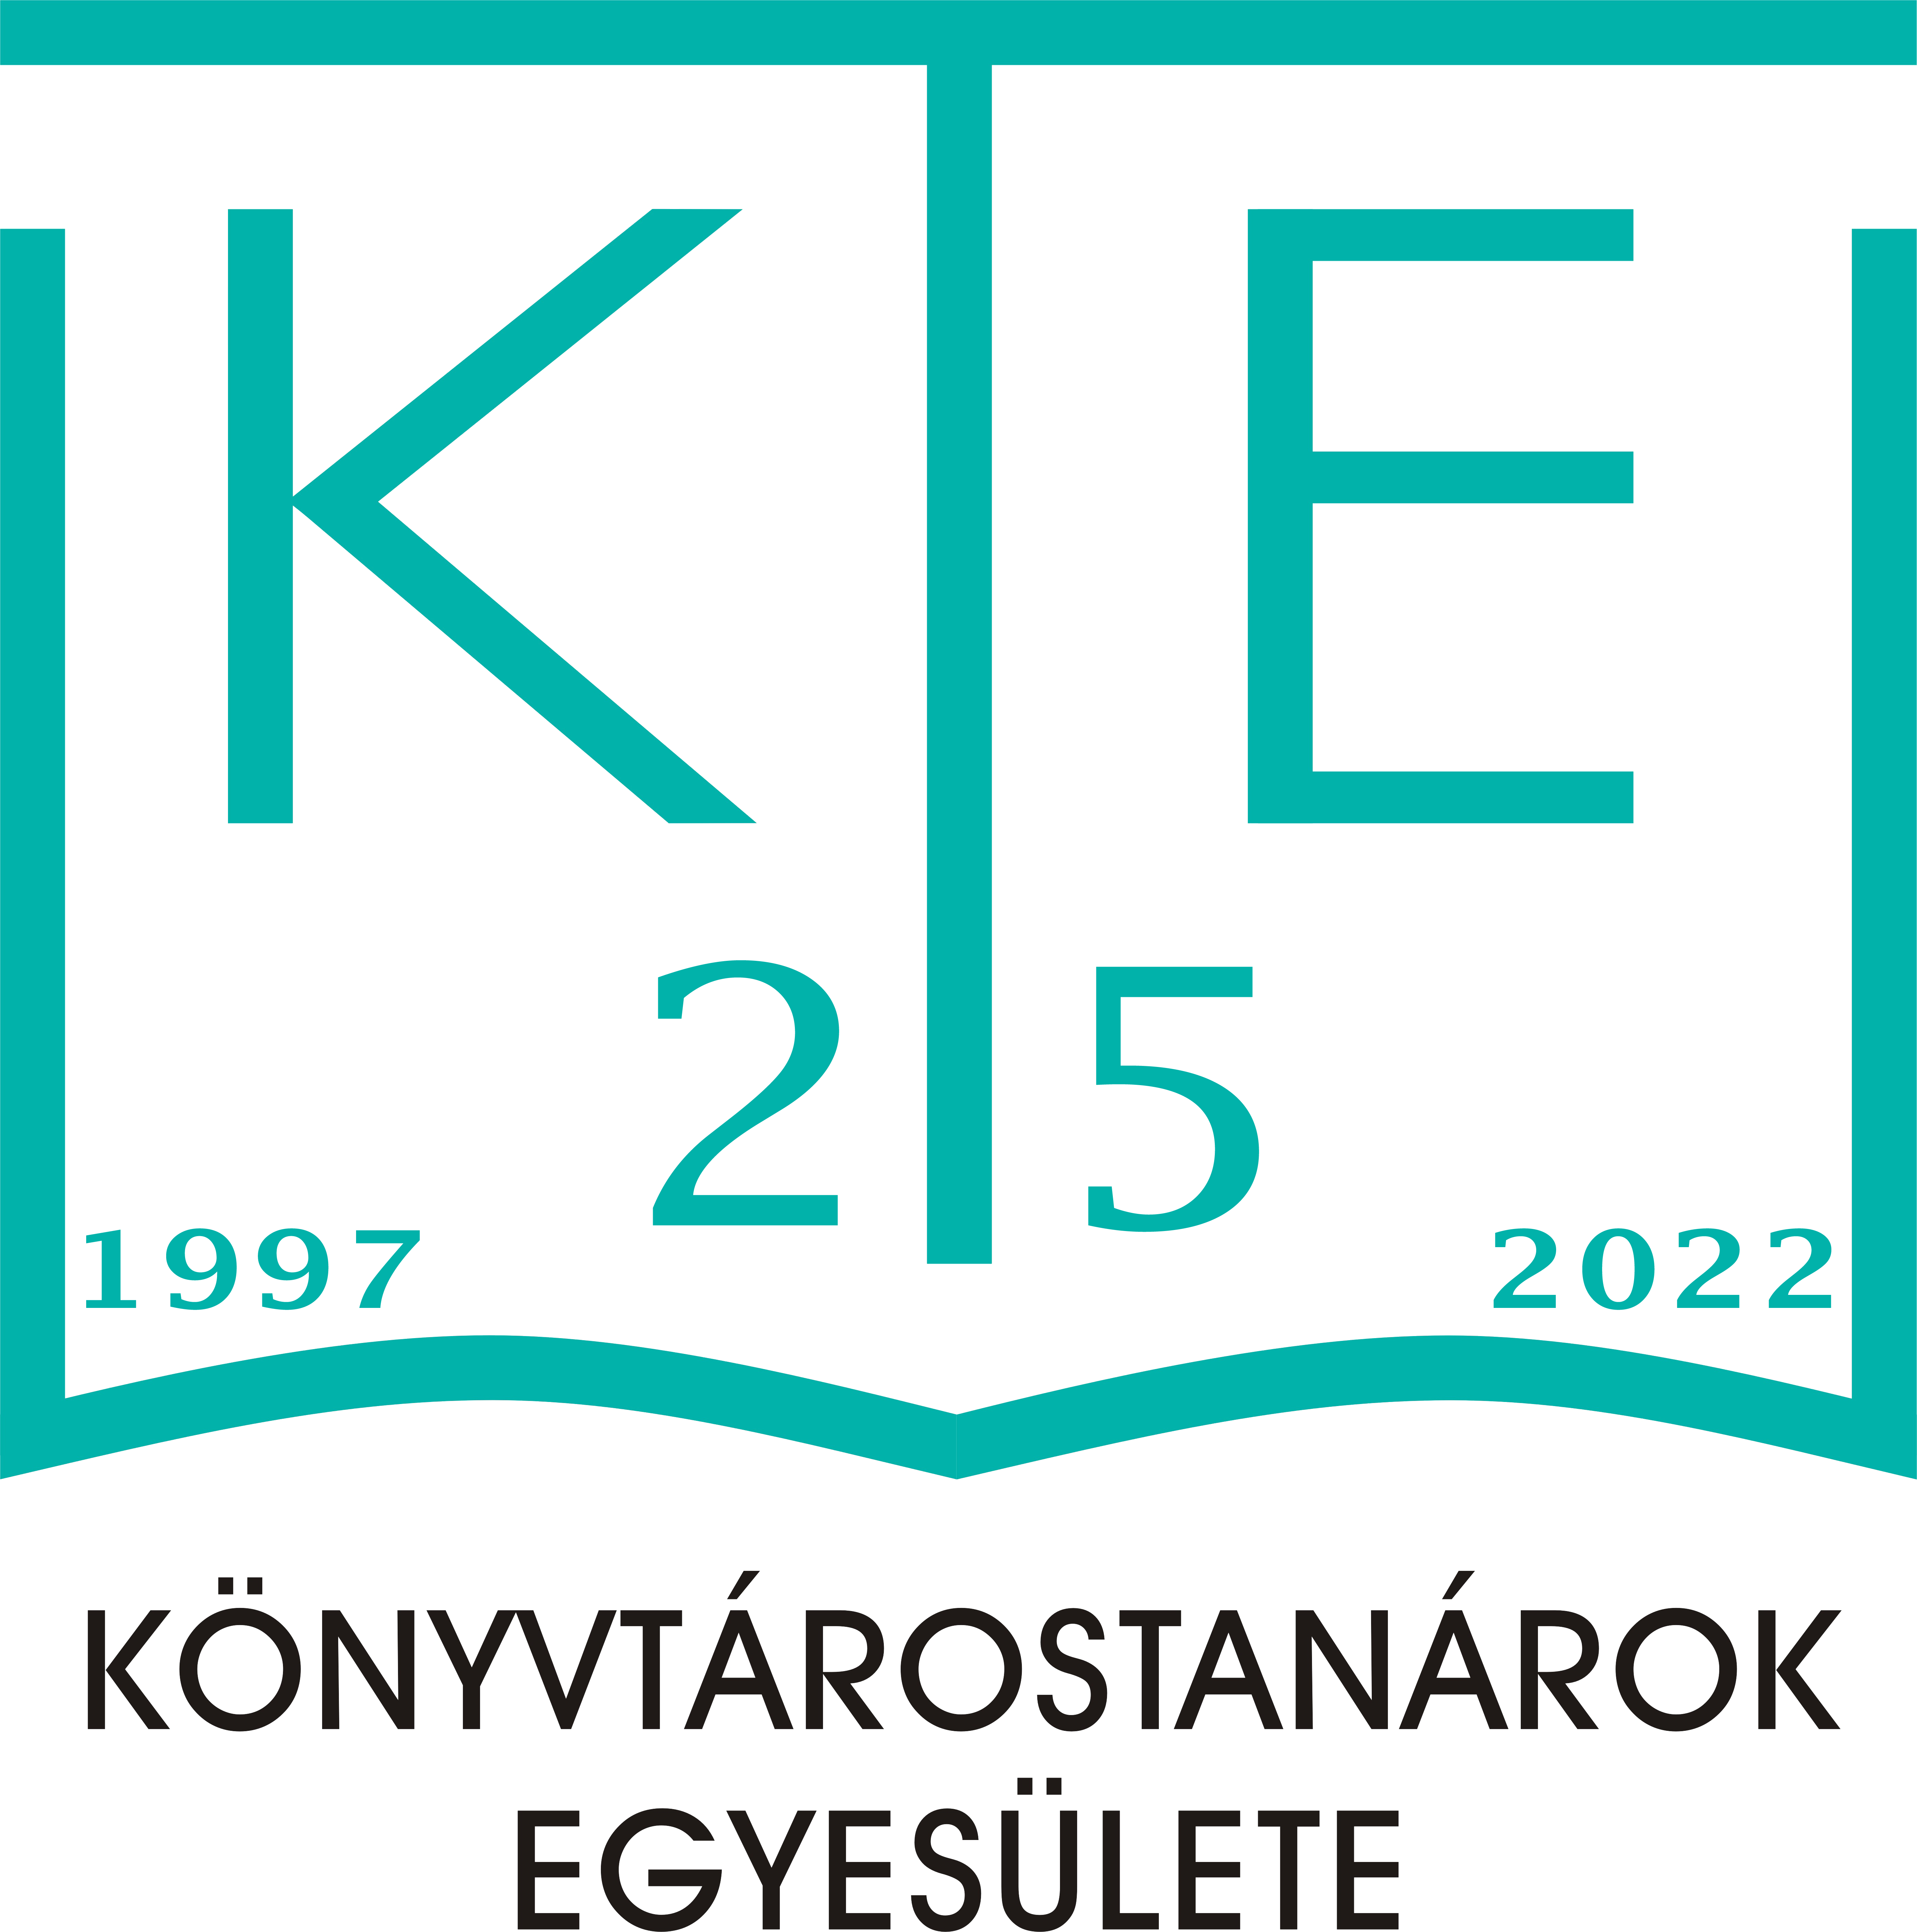 KTE logo